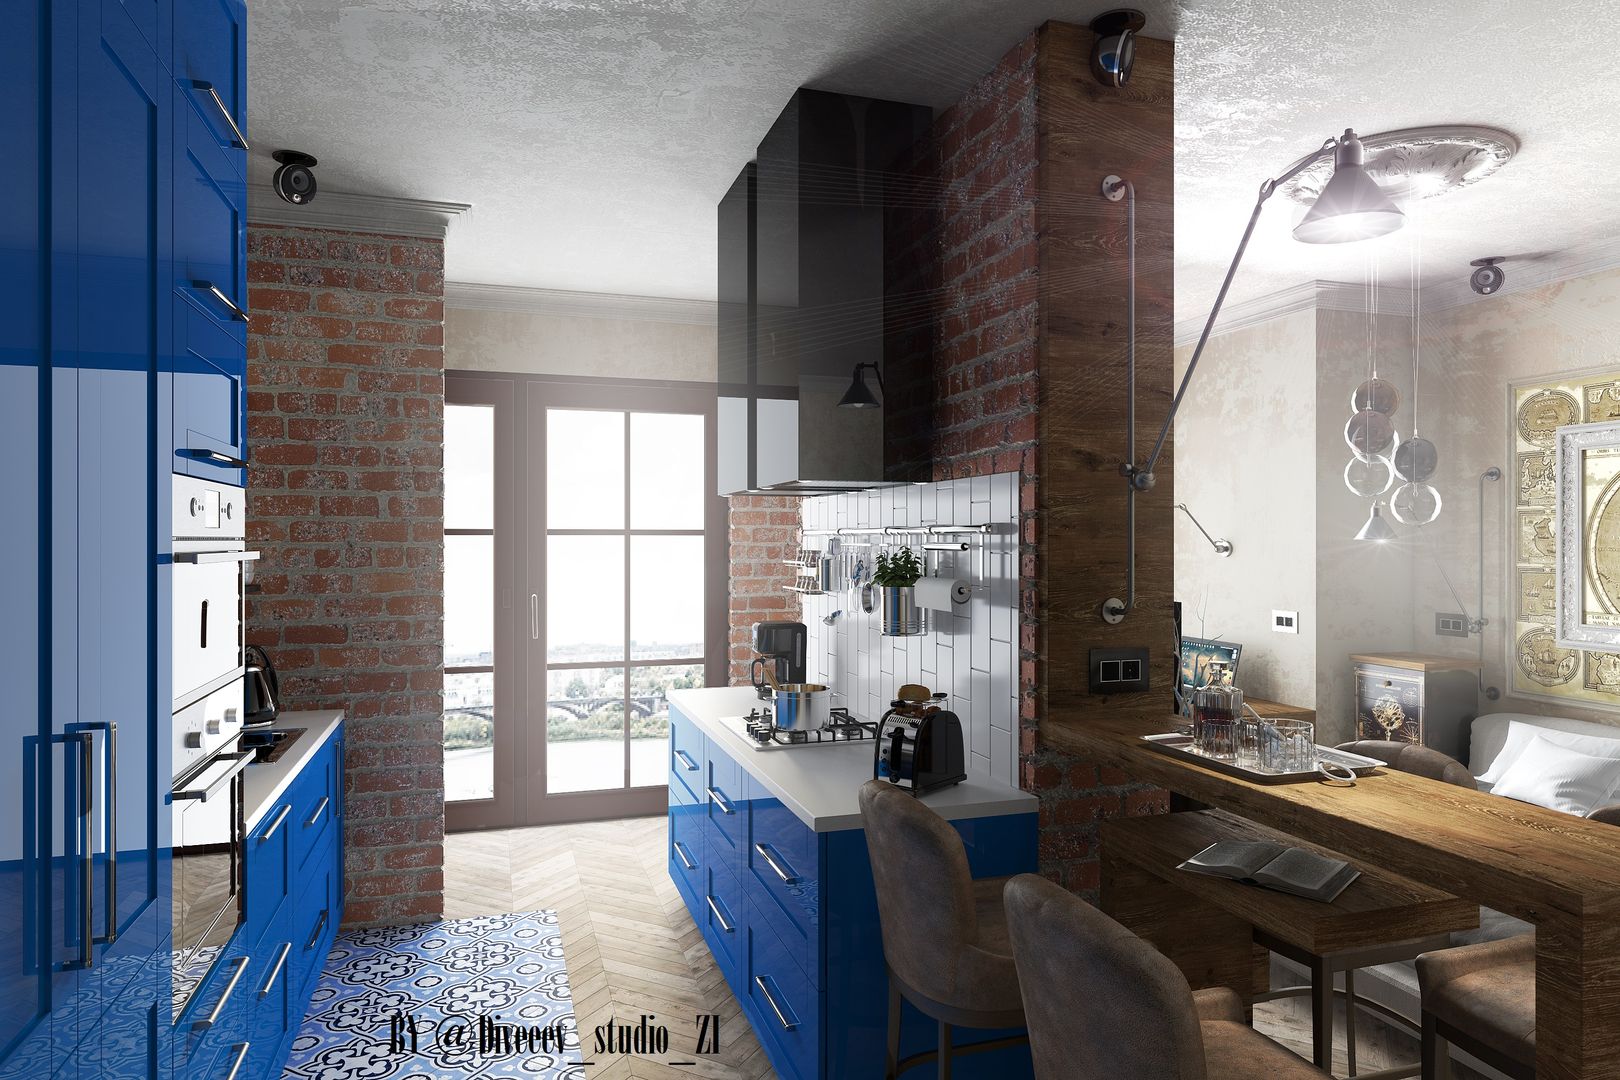 Квартира студия, Diveev_studio#ZI Diveev_studio#ZI Кухня в стиле лофт